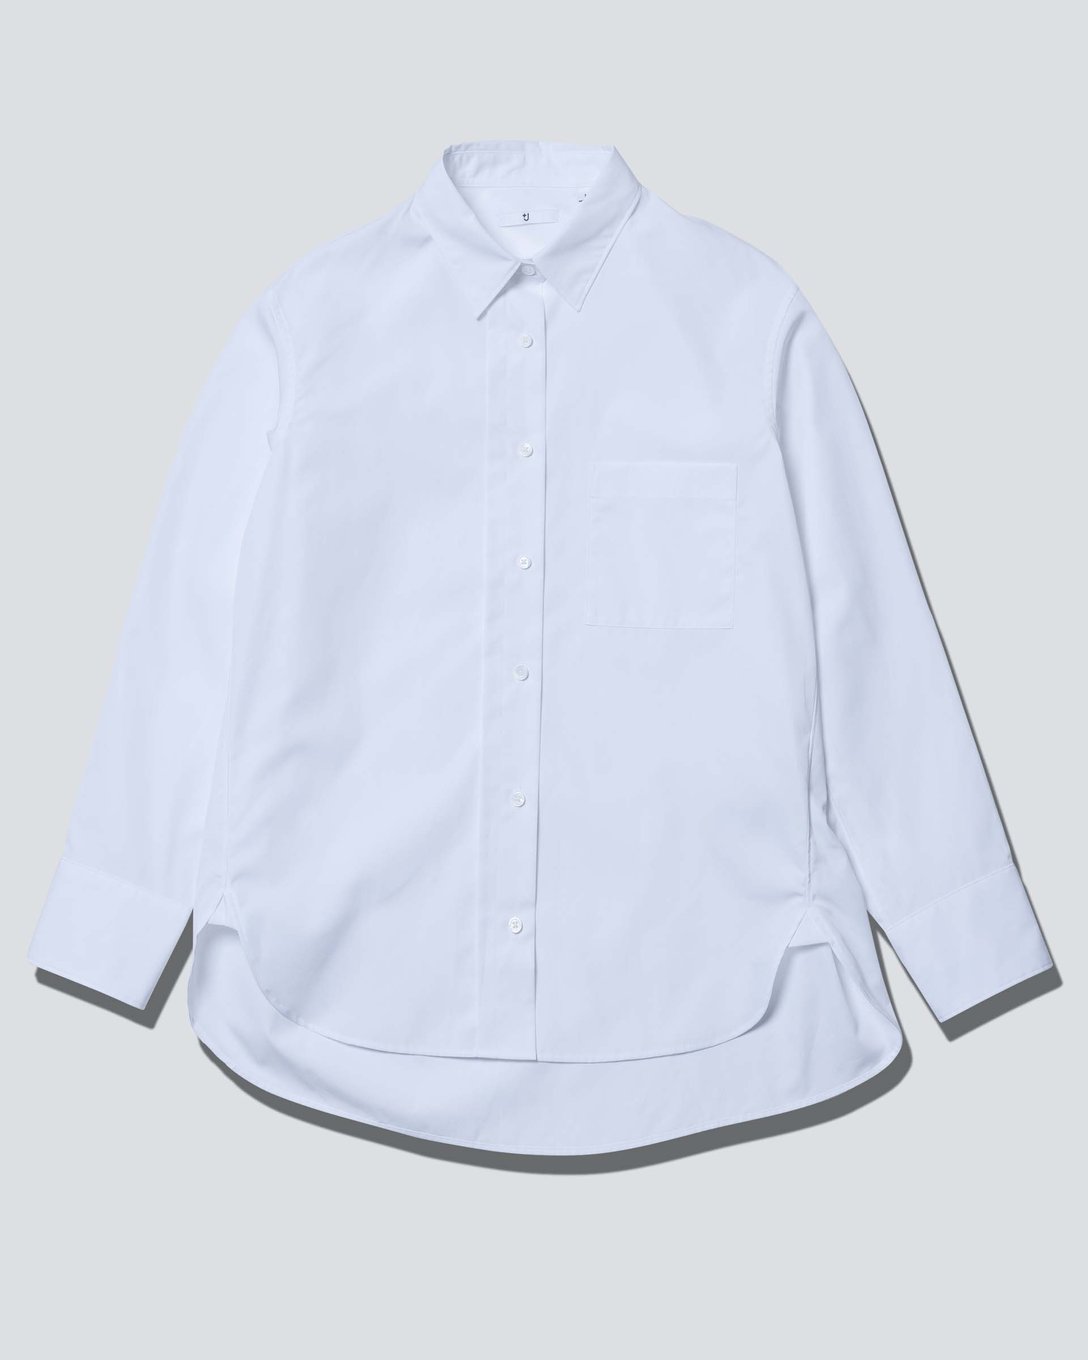 スーピマコットンシャツ（長袖）（ホワイト、3990円） Image by FASHIONSNAP